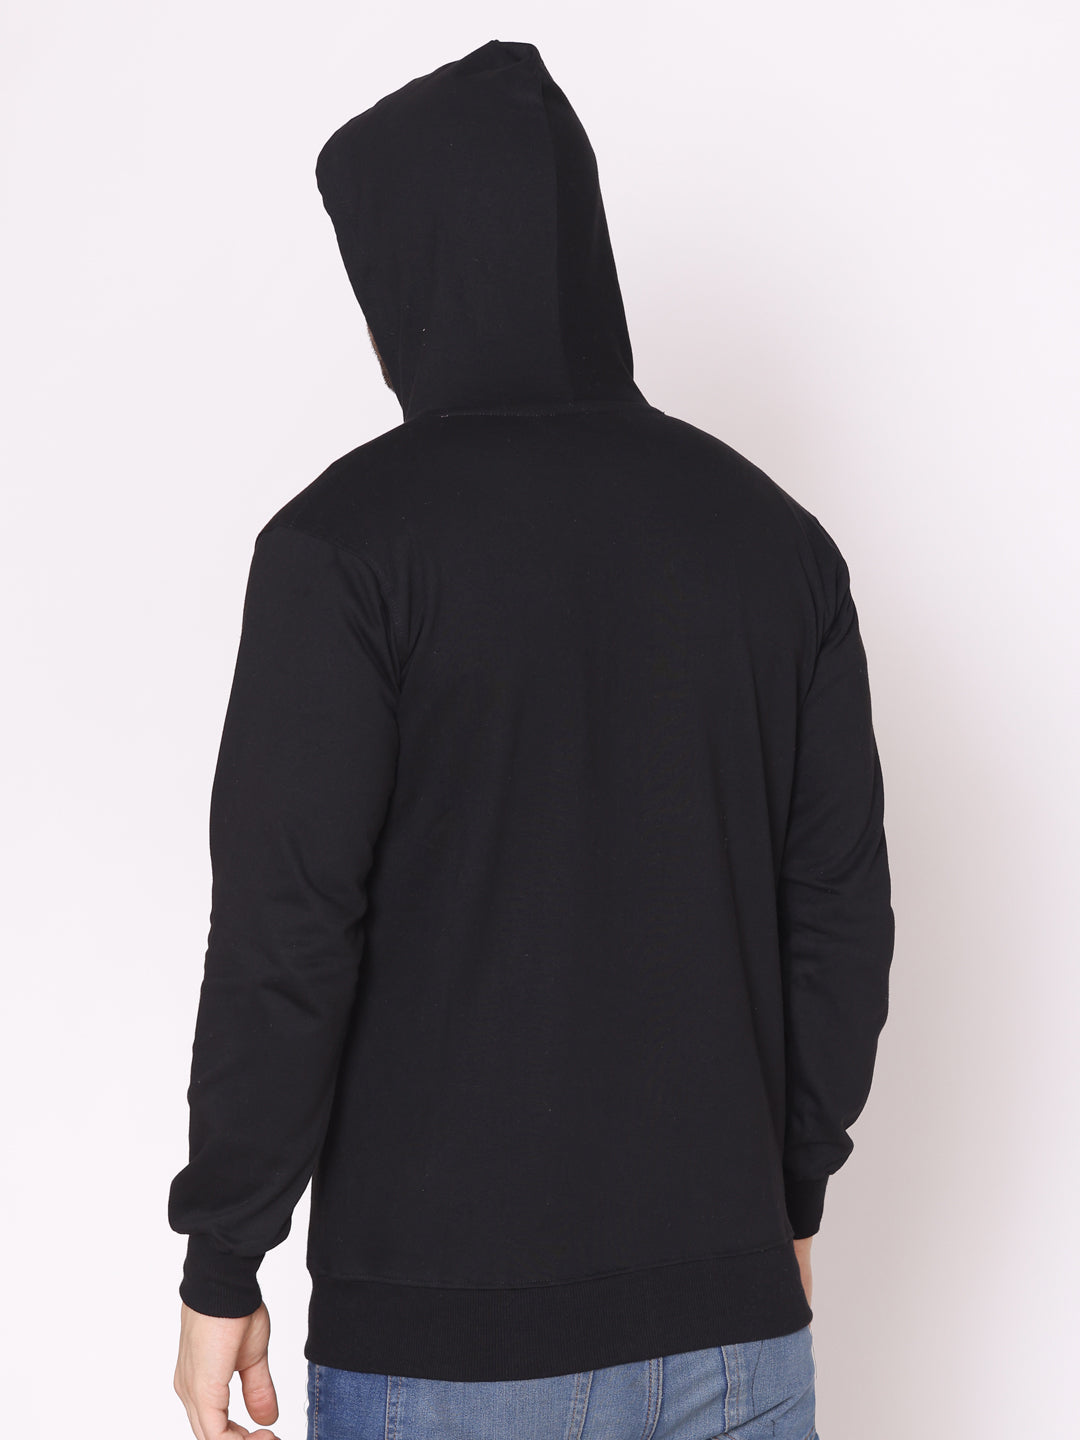 Men's Black Solid Cotton Fleece Hoodie Jacket